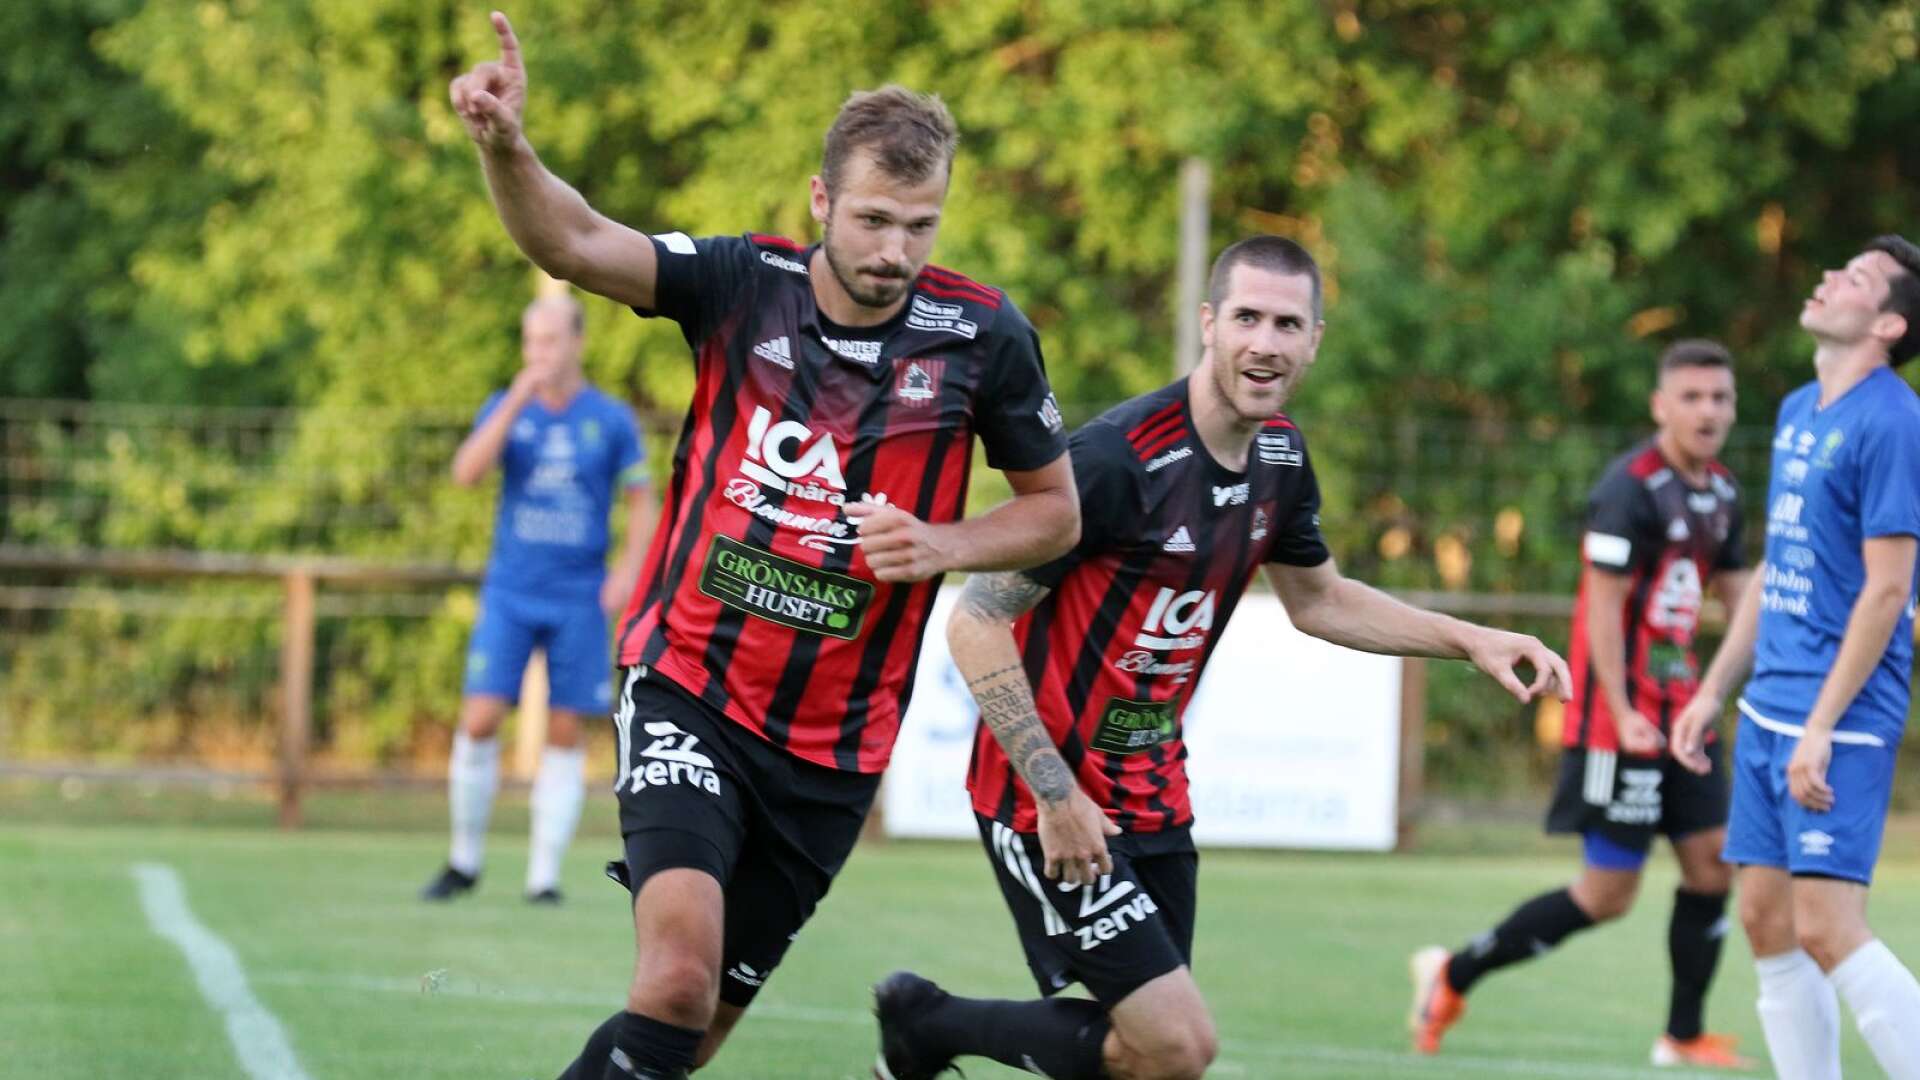 Oskar Mårtenssons Ulvåkers IF segrade mot Ekedalens SK i den första matchen efter sommaruppehållet.